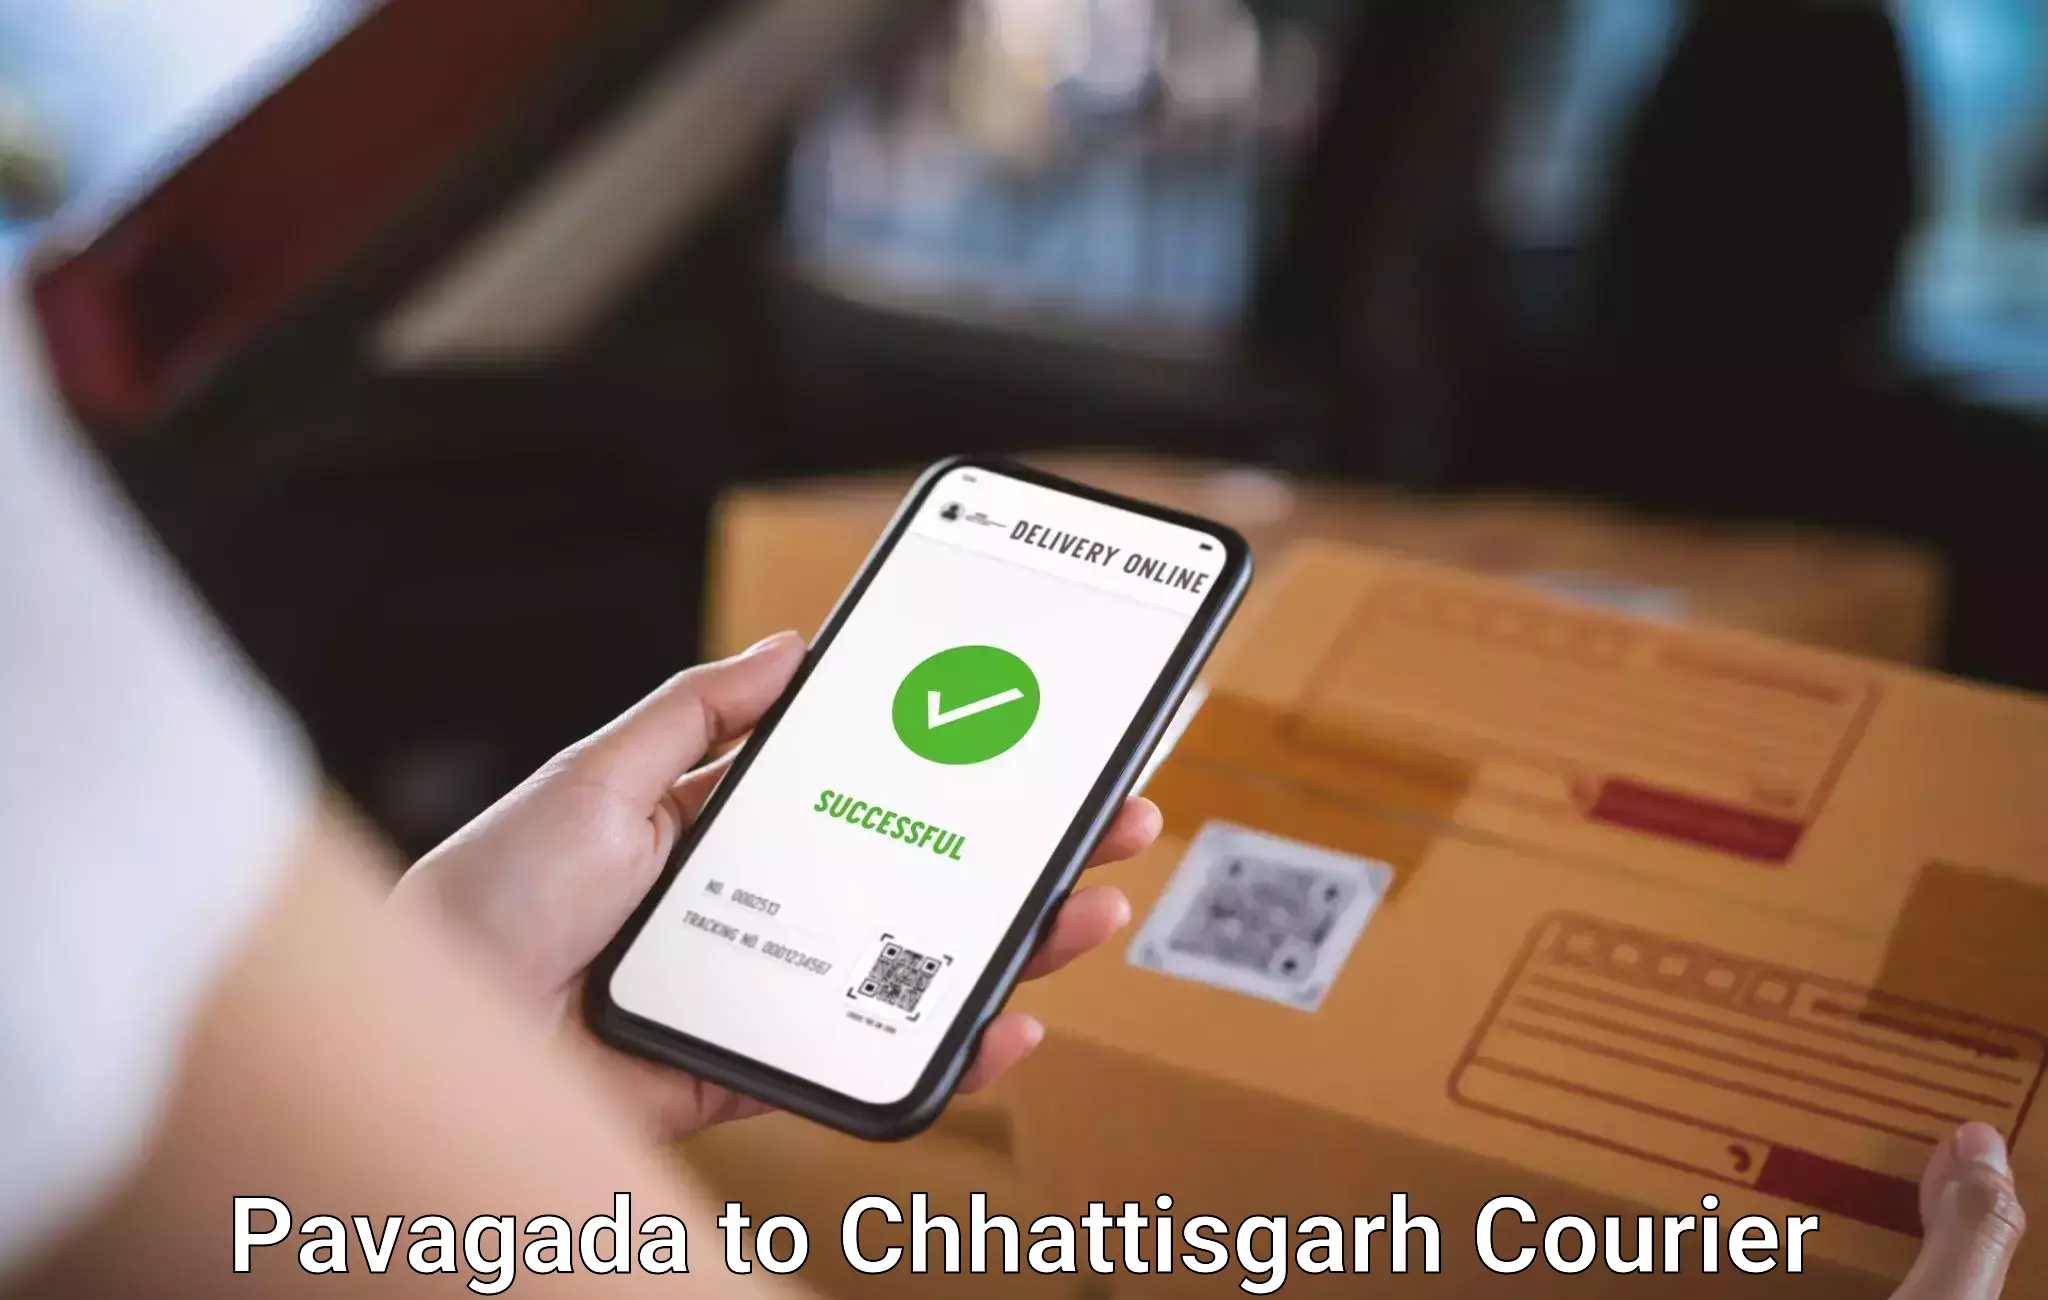 Baggage delivery optimization Pavagada to Chhattisgarh